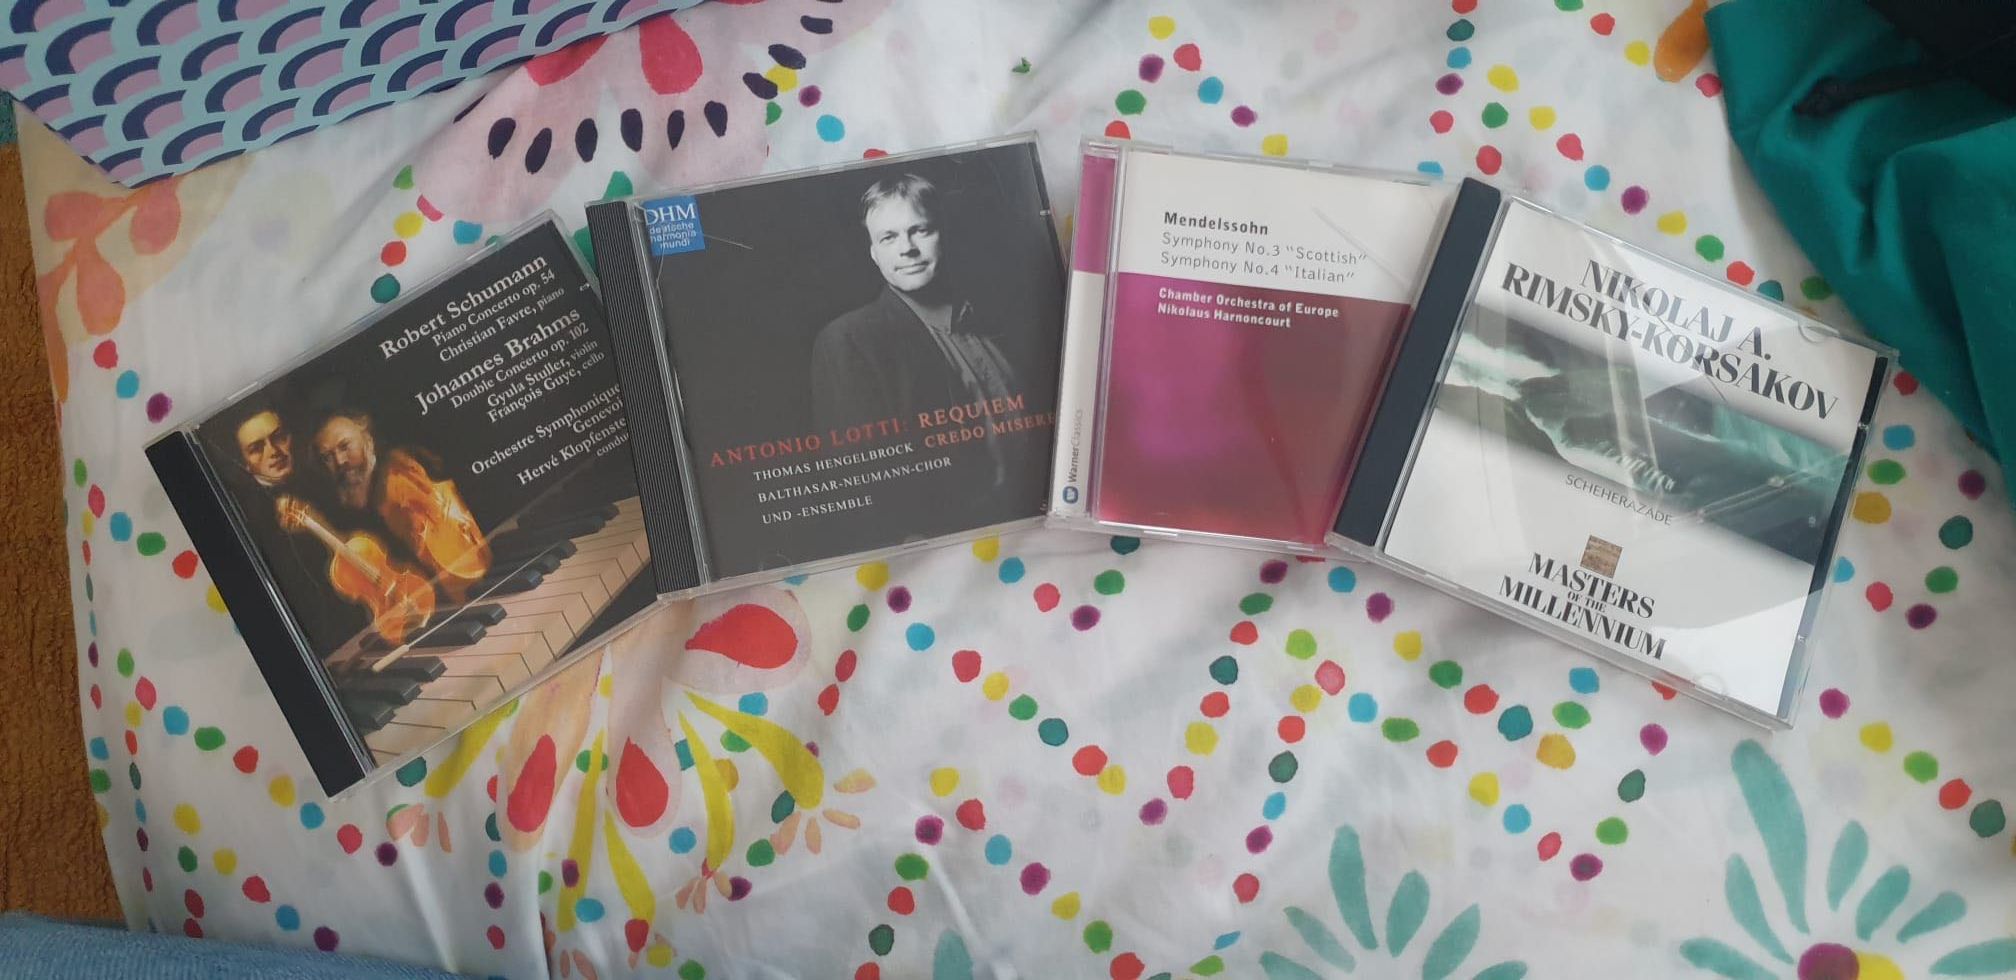 CDs de Música Clássica + DVD ópera Puccini